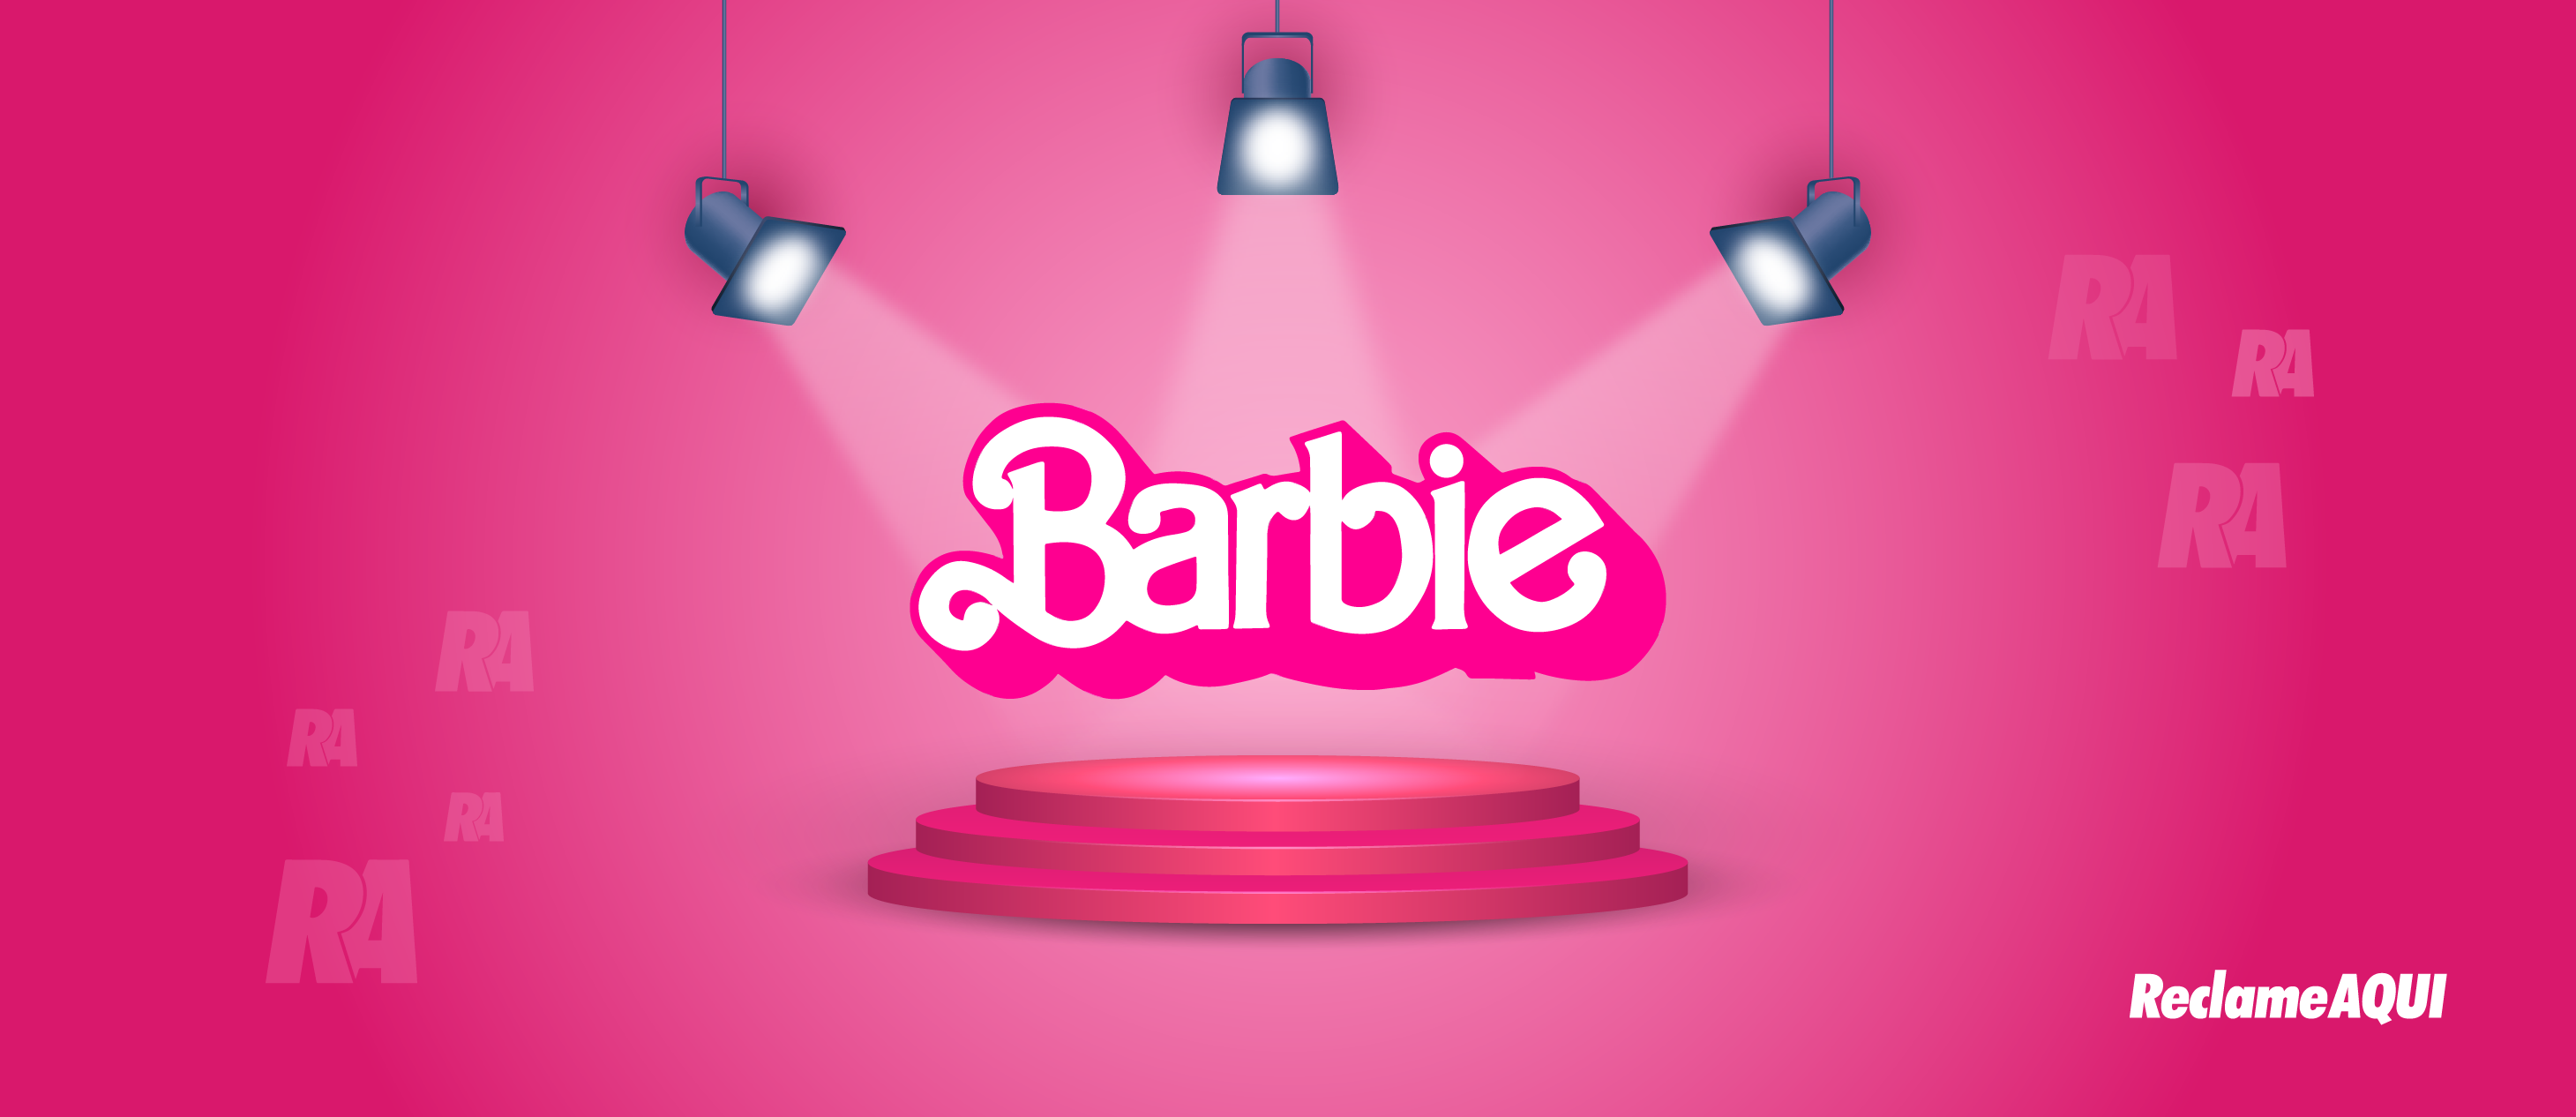 Quando estreia Barbie nos cinemas? Veja data e onde comprar ingressos